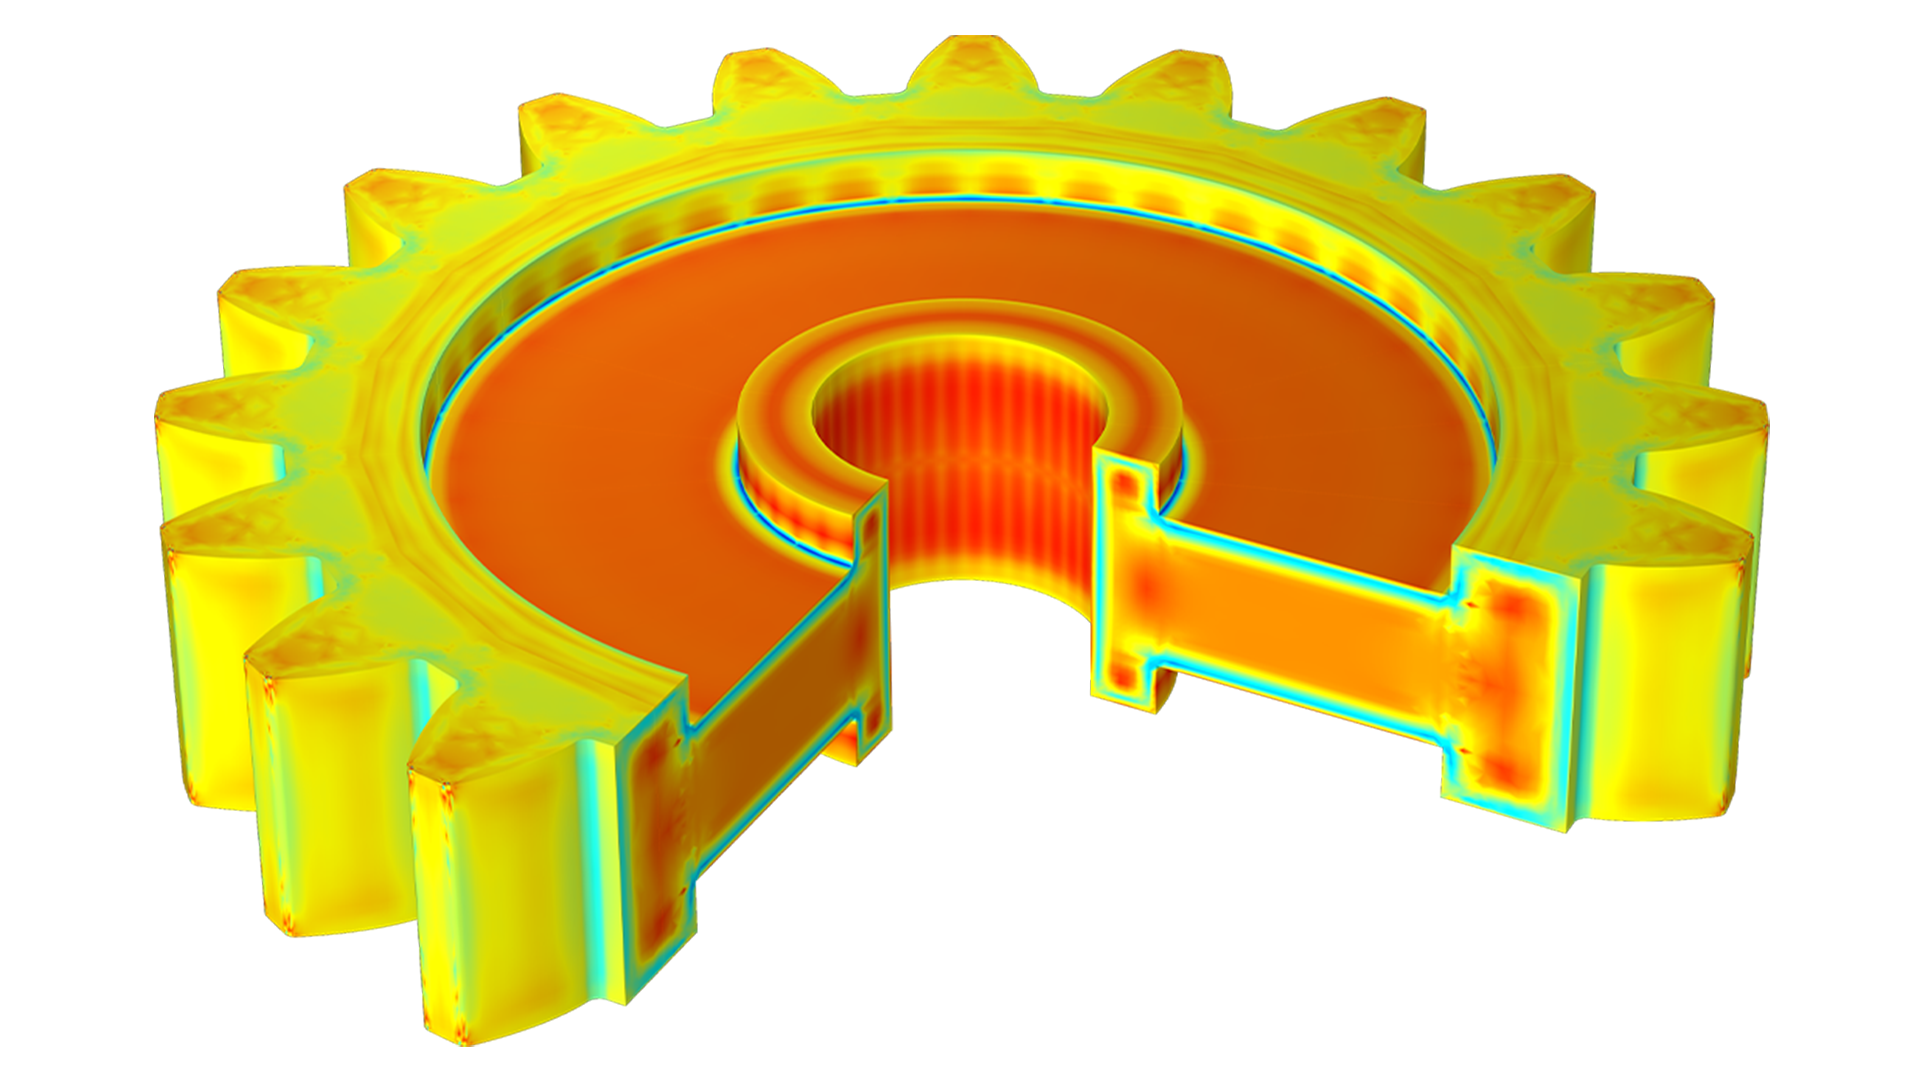 以橙色、黄色和绿色显示的直齿轮模型，其中缺少一个切面，以呈现齿轮的内部结构。